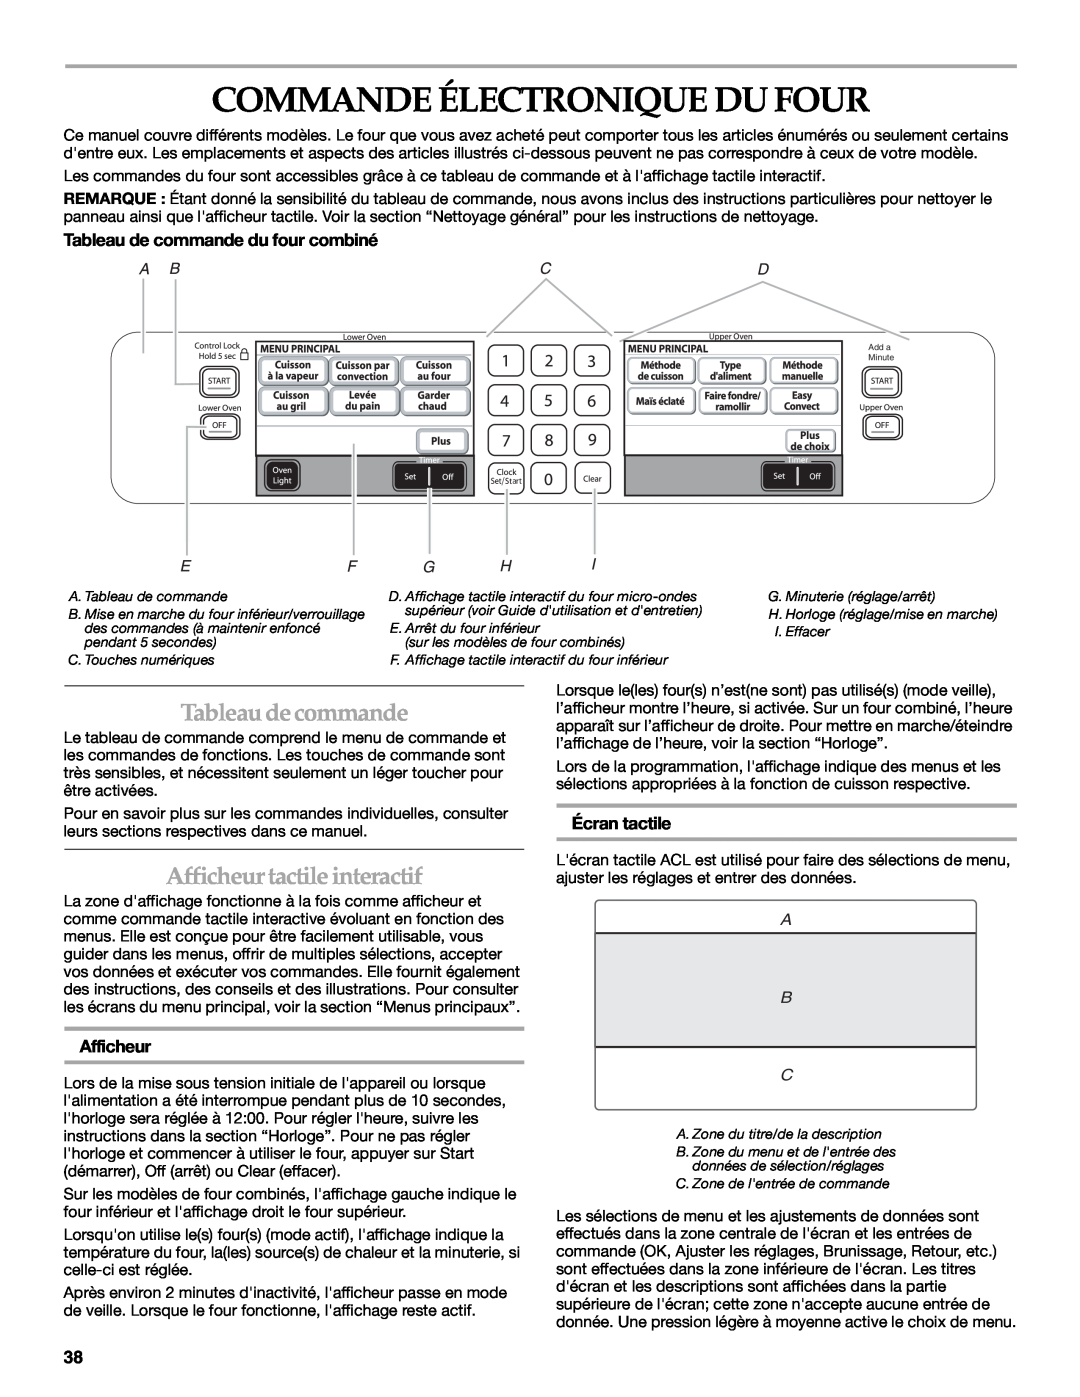 KitchenAid KEHU309 Commande Électronique Du Four, Tableaudecommande, Afficheurtactile interactif, Écran tactile, A B C 